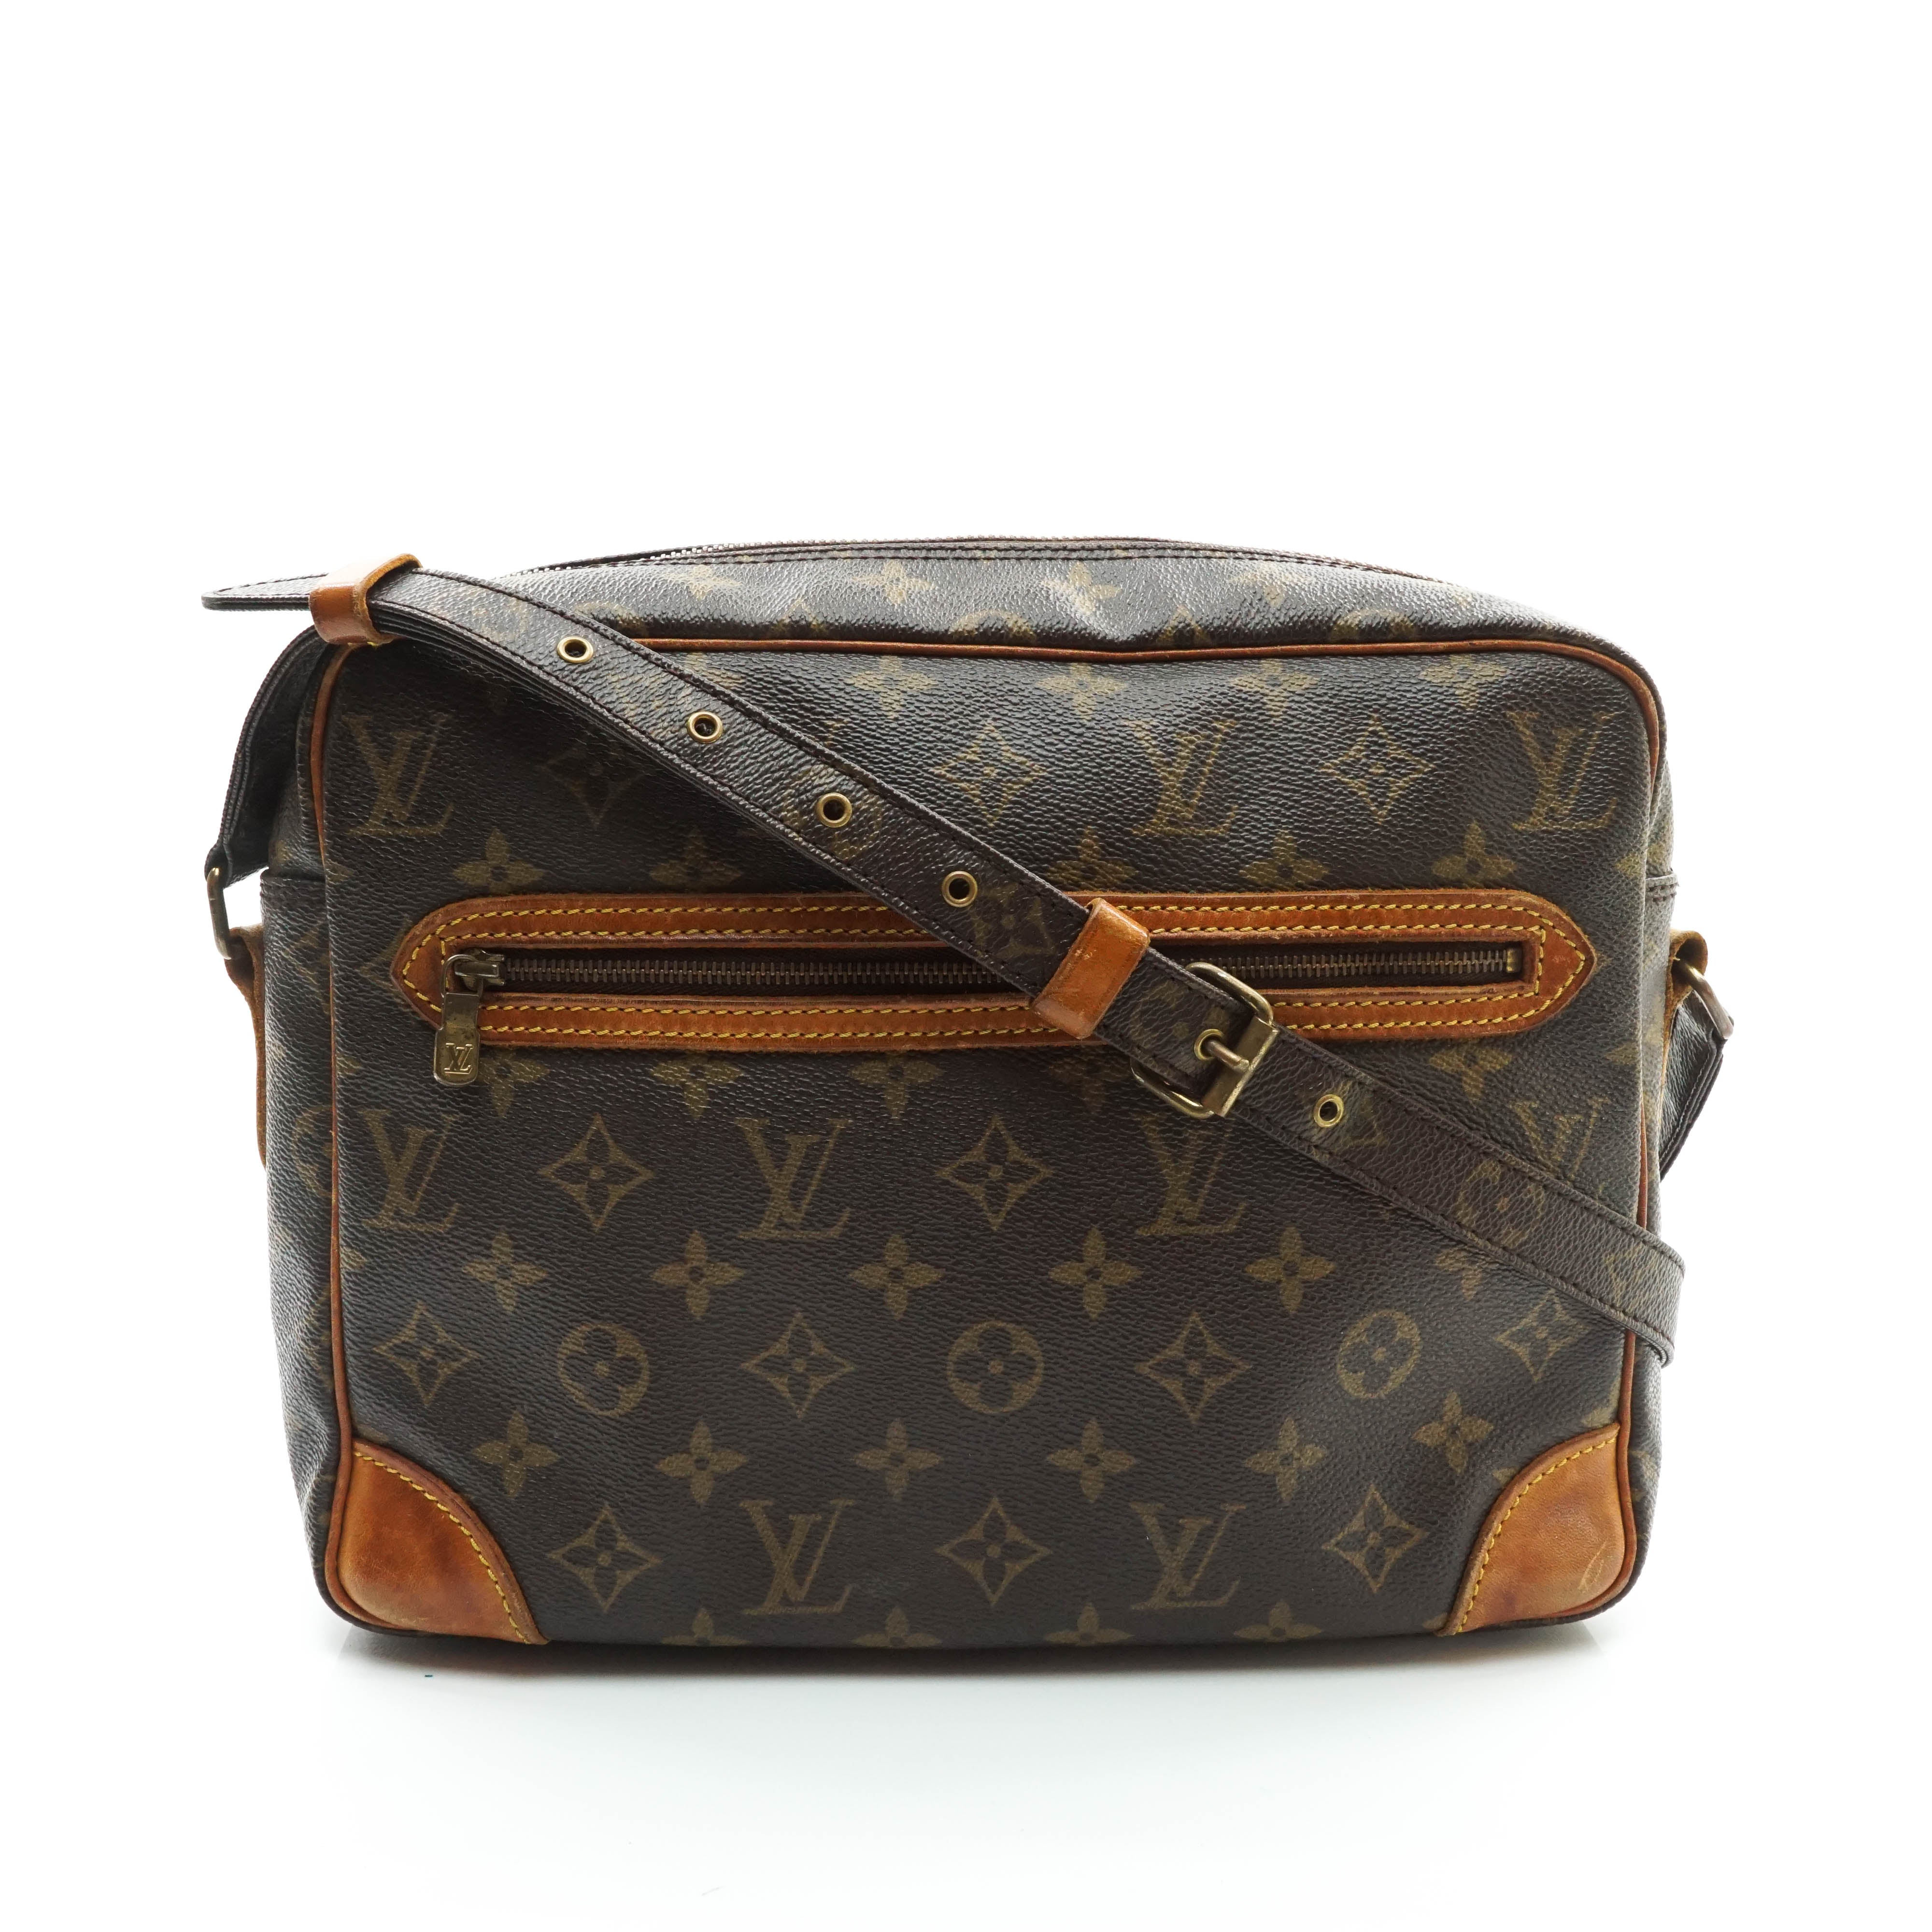 Louis Vuitton crossbody bag $775 #louisvuitton #lvmessenger